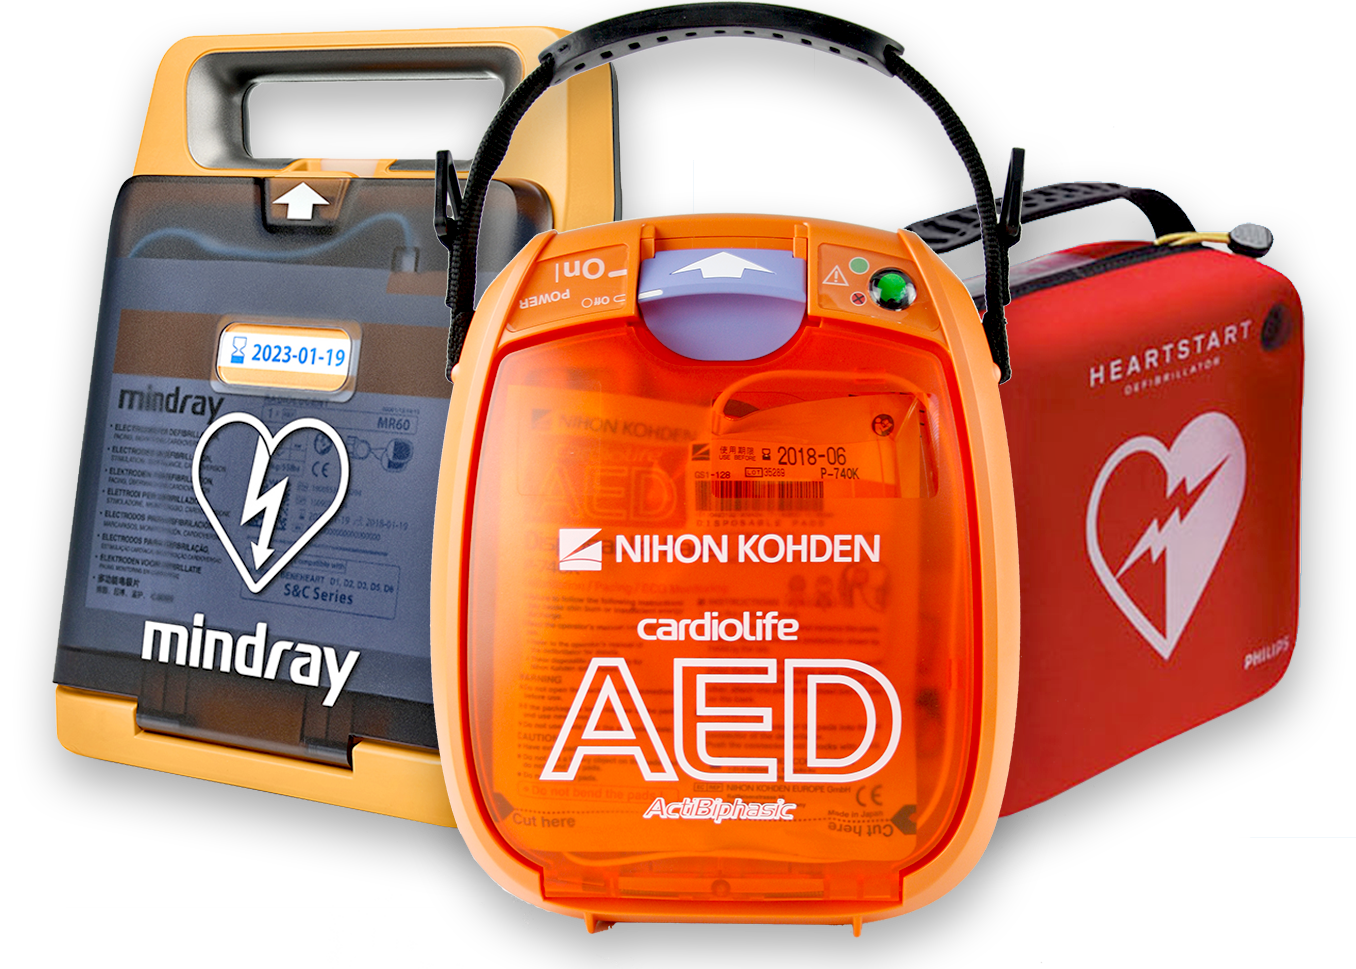 AED - Defibrillator